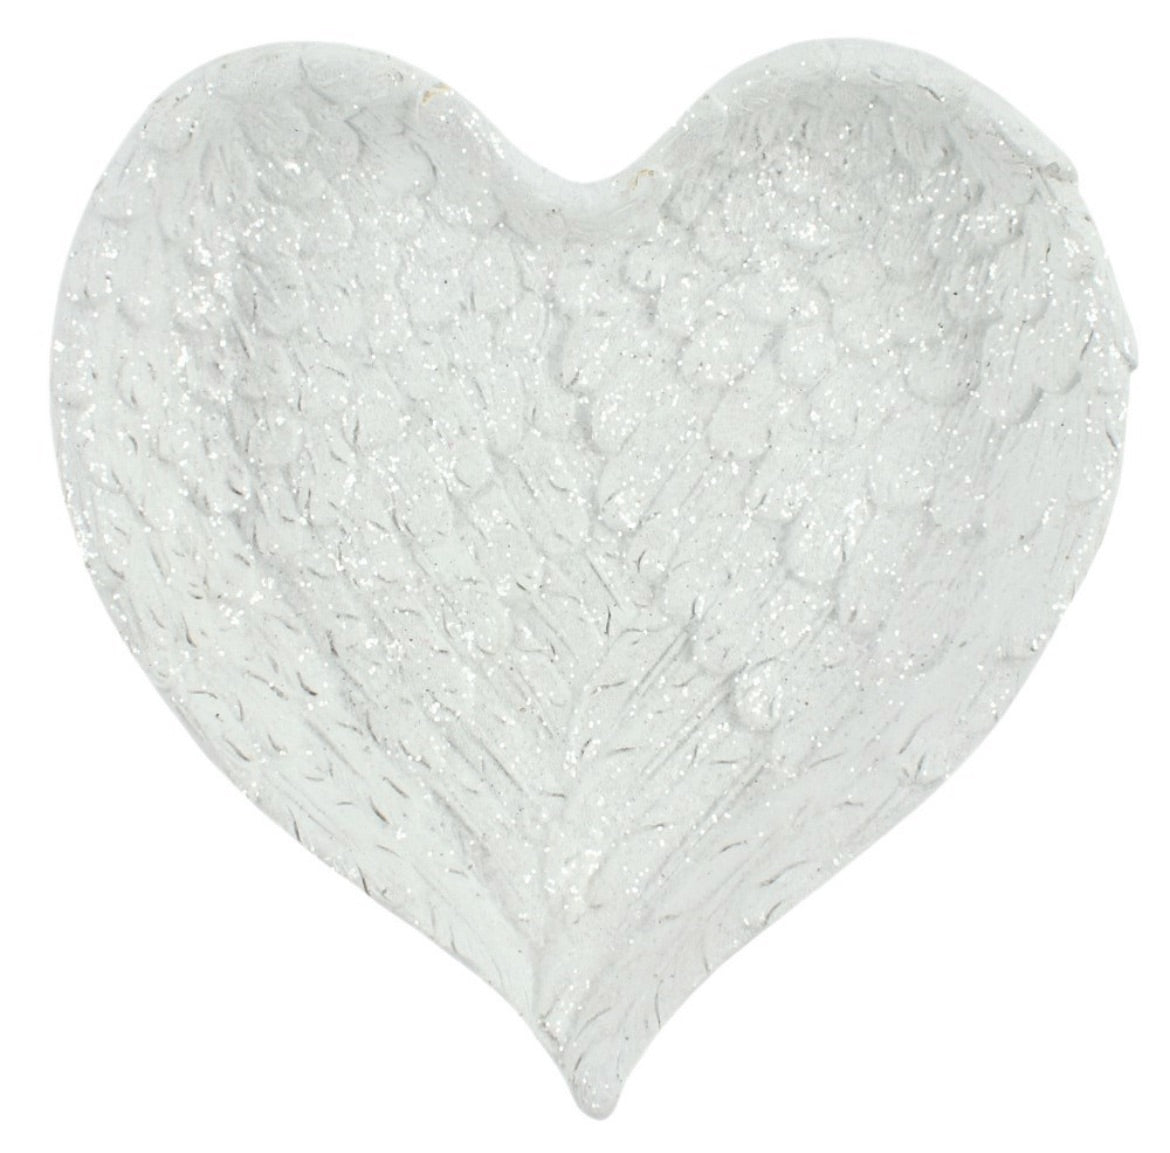 Glitter Heart Shaped Angel Wing Trinket Dish